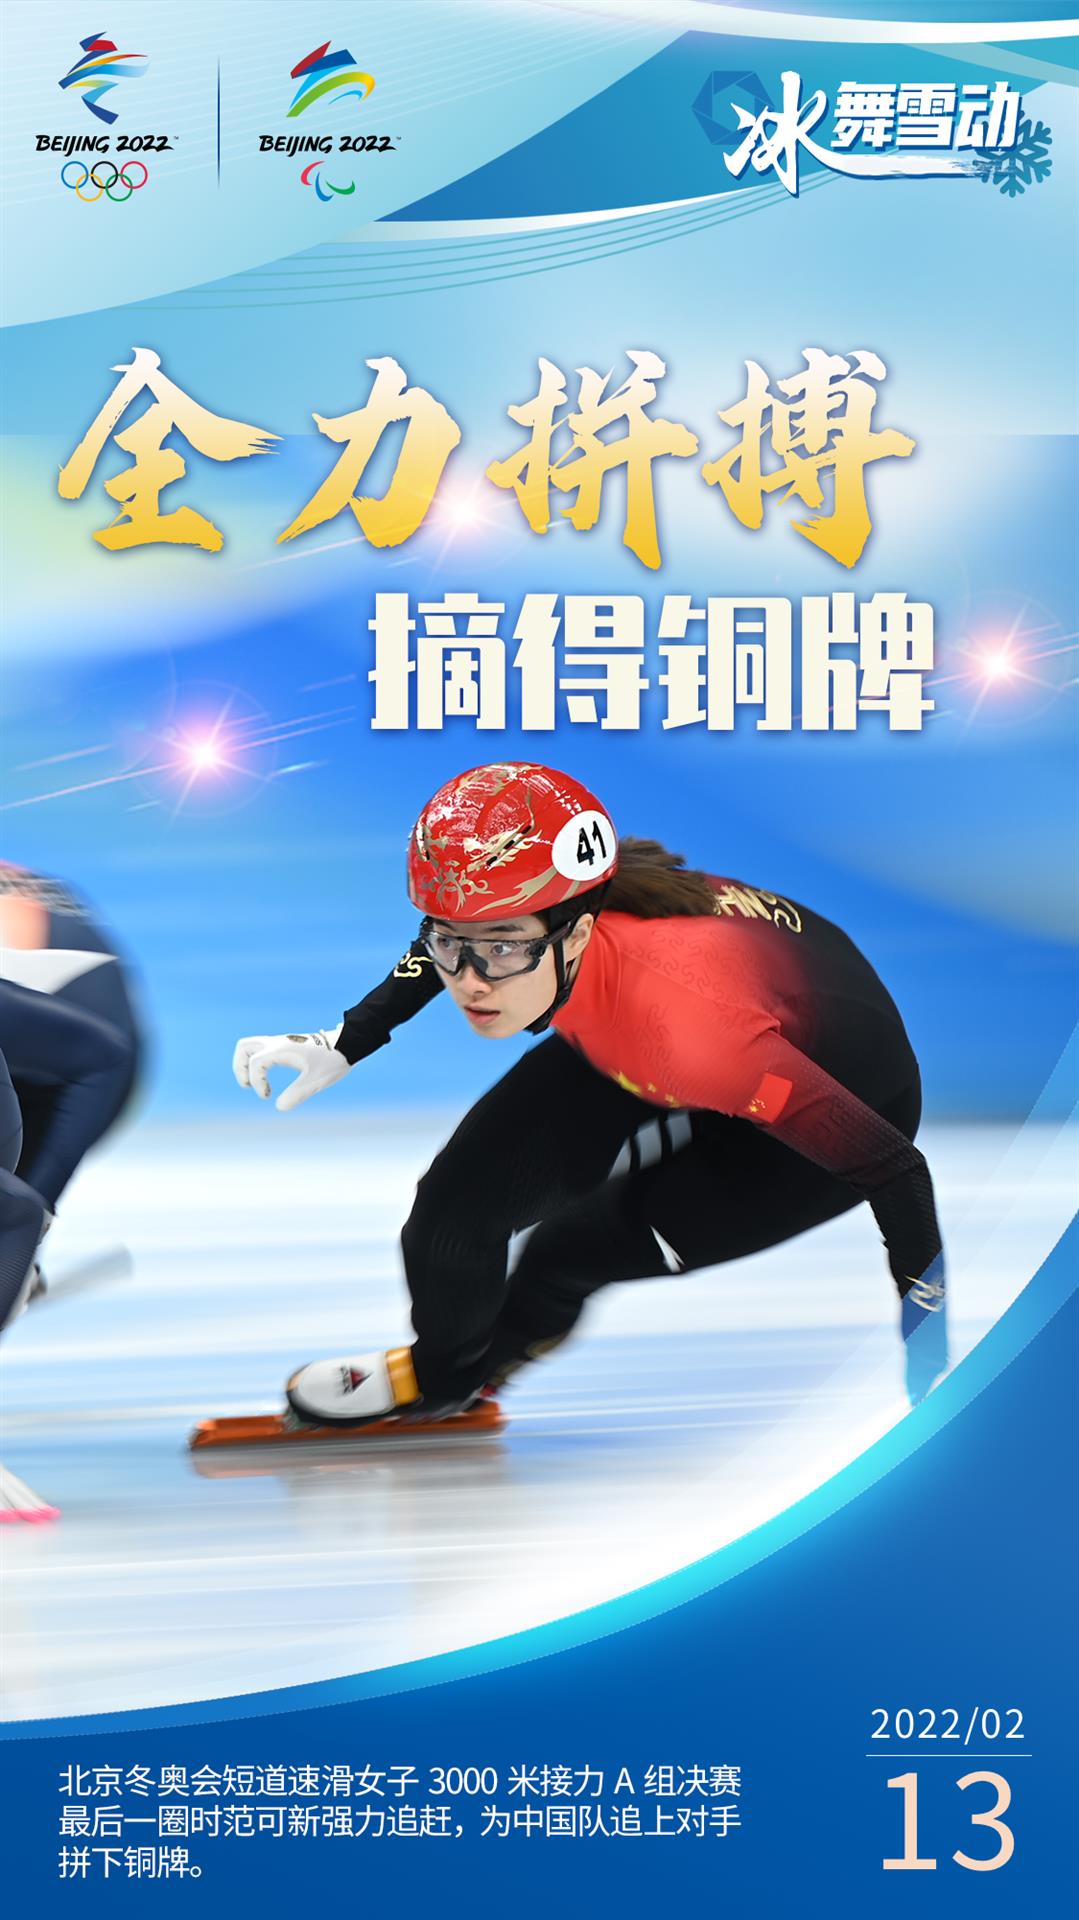 冬奥选手广告图片